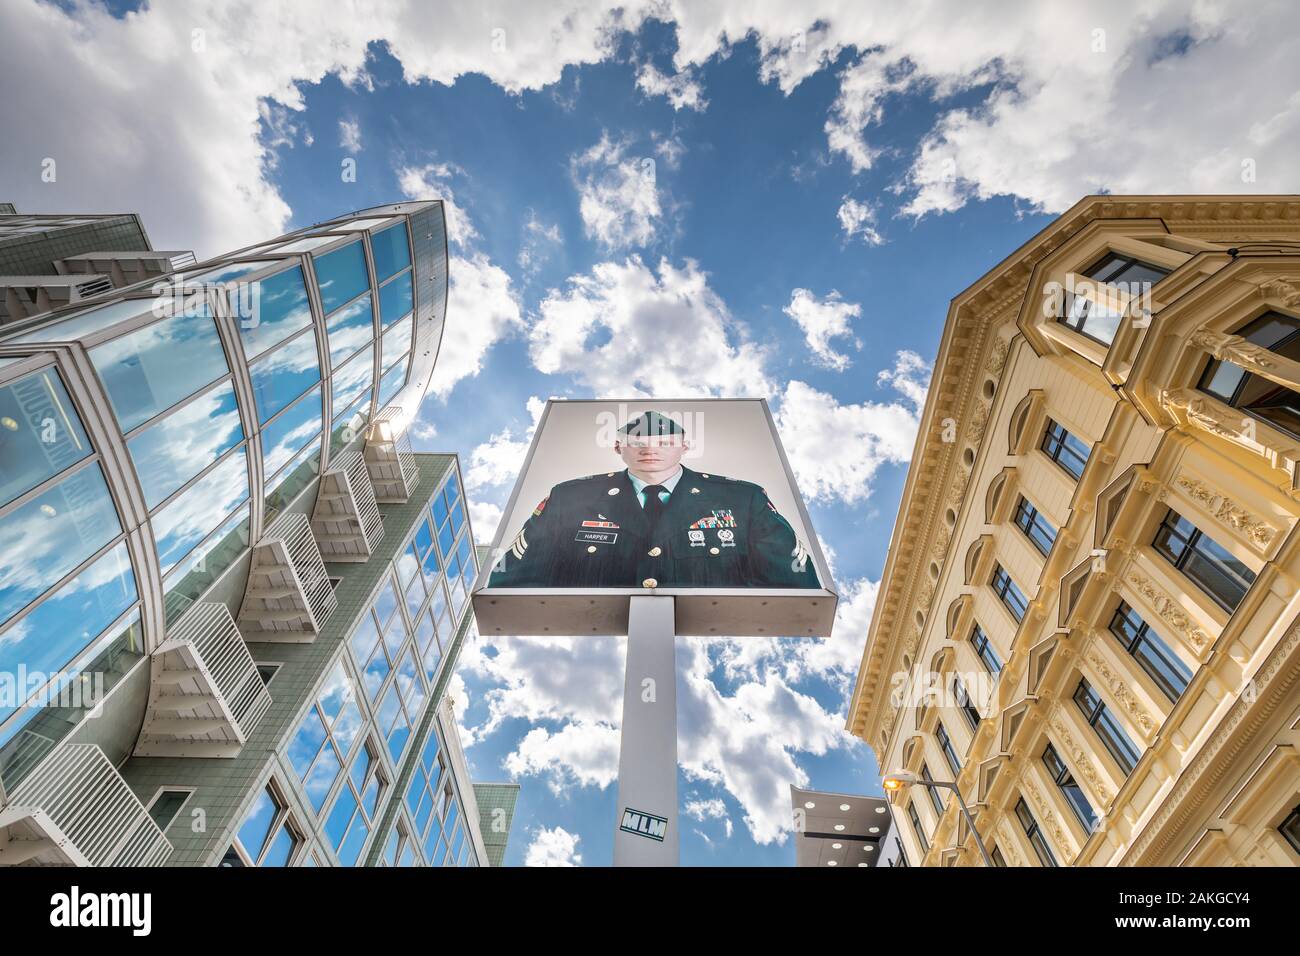 Vue grand angle du dessous de Checkpoint Charlie à Berlin, avec la photo du soldat américain au milieu, contre un paysage bleu d'été Banque D'Images